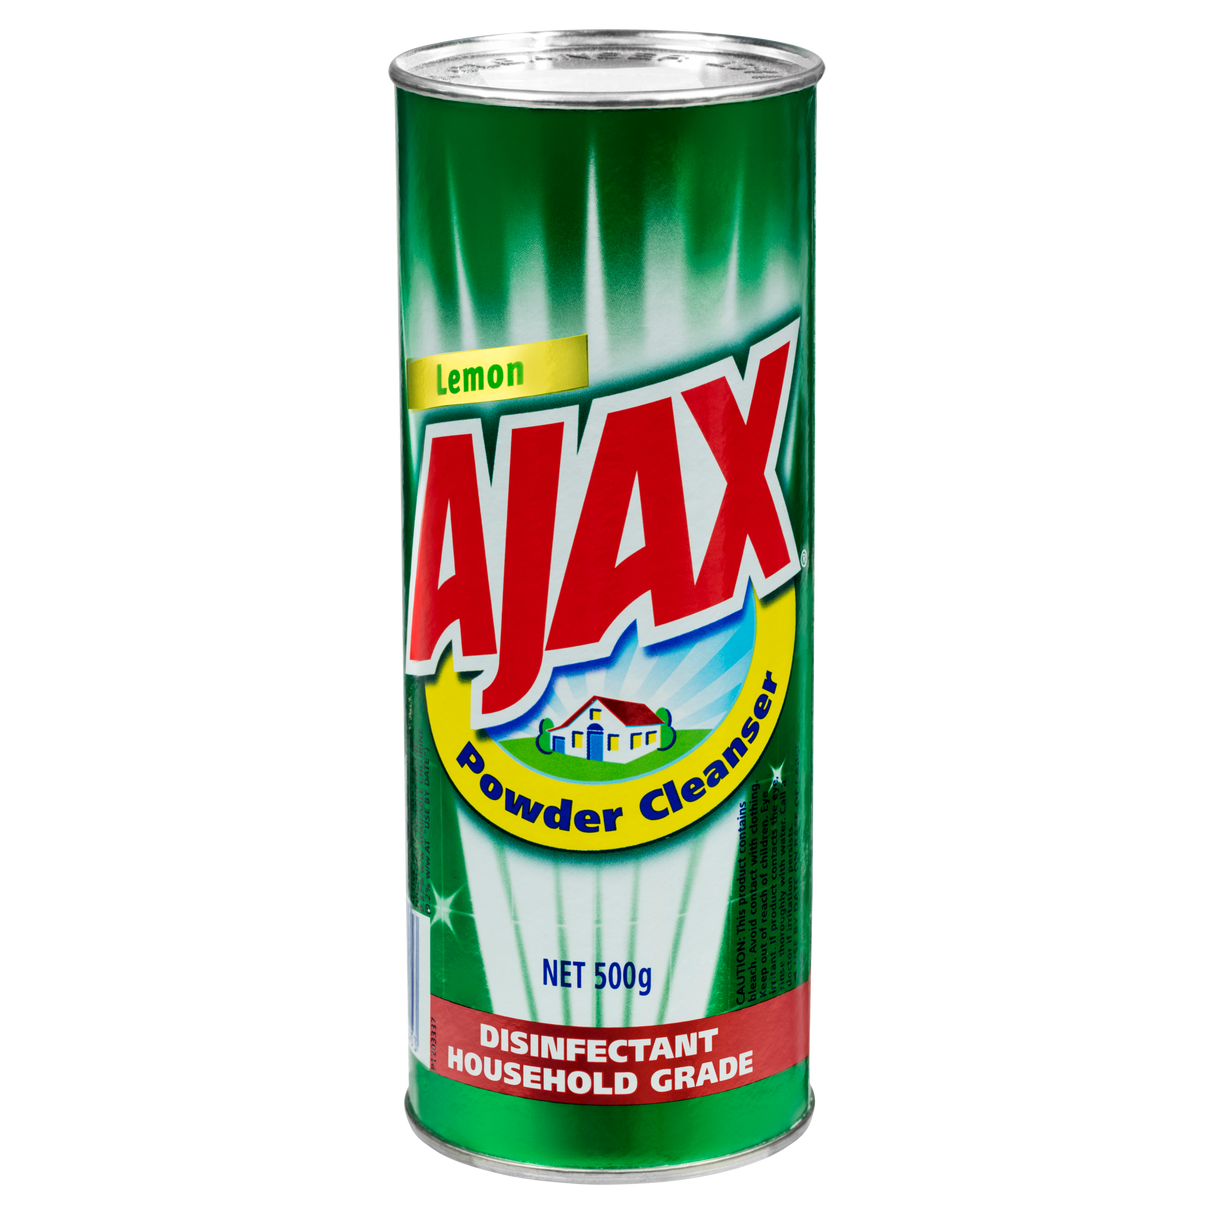 Ajax Powder Cleanser Disinfectant Household Grade Lemon 500g